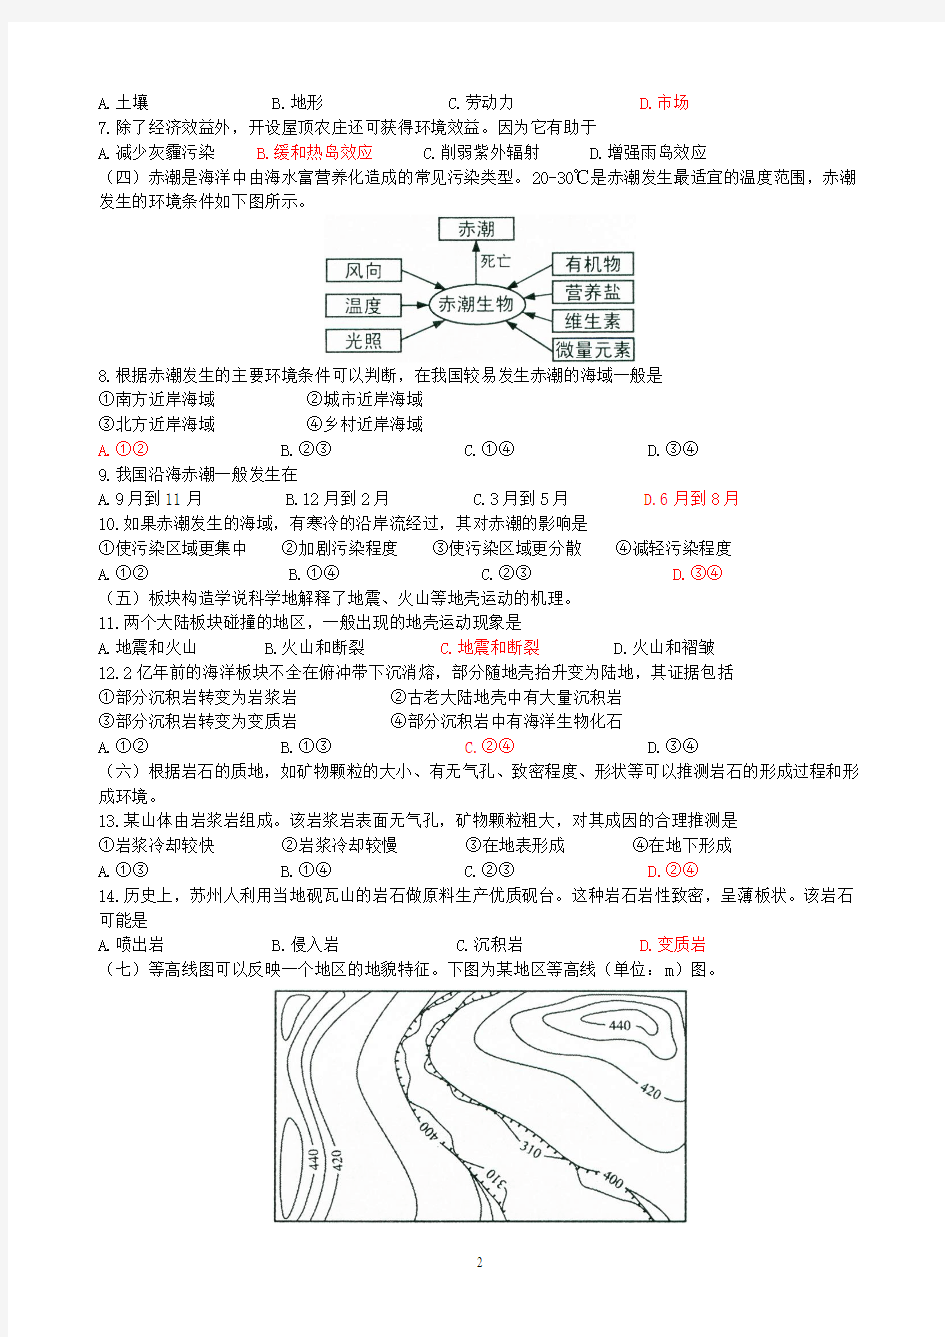 2015年普通高等学校招生全国统一考试(上海卷地理)